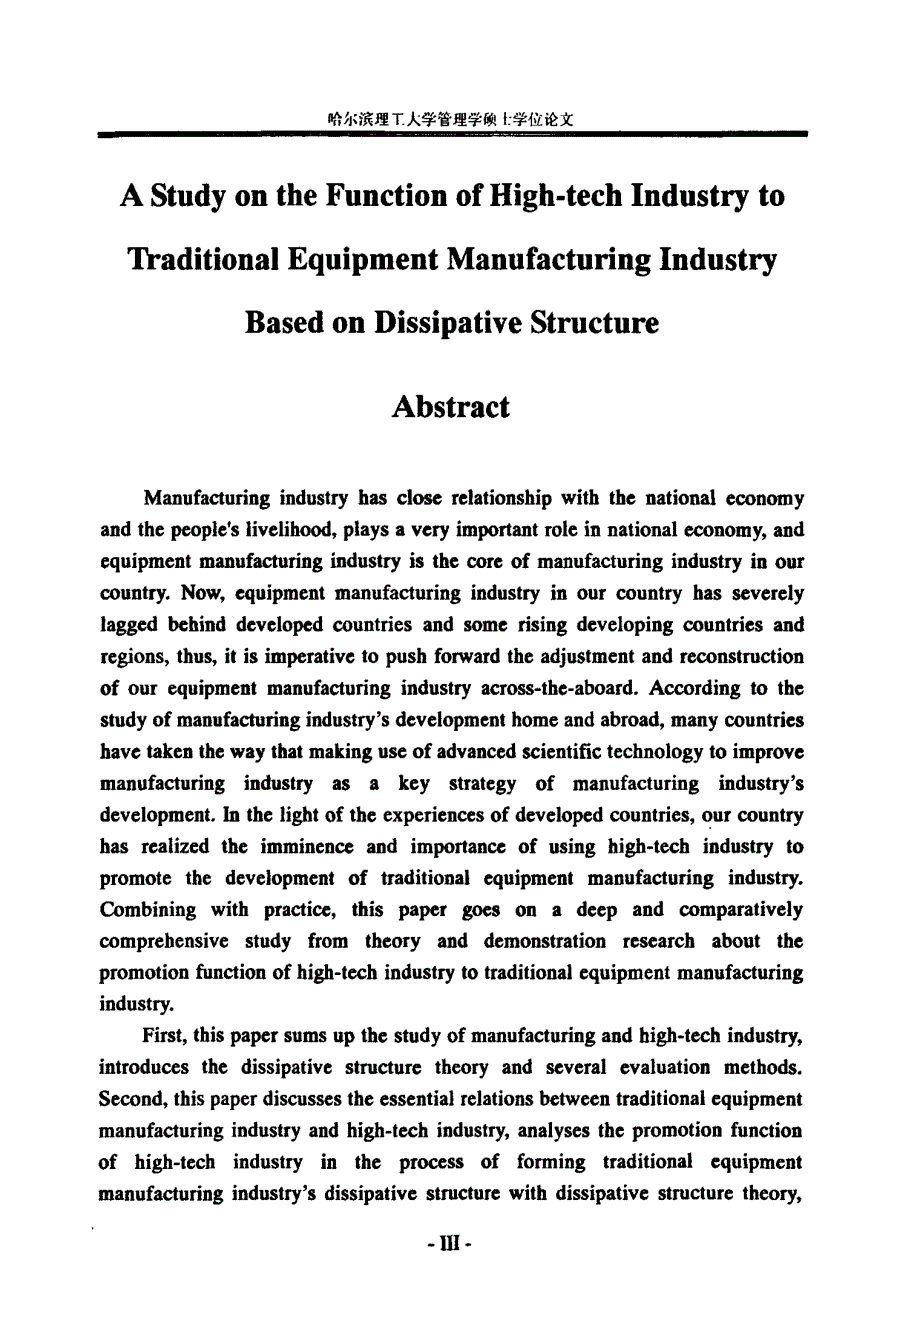 基于耗散结构的高新技术产业对传统装备制造业作用研究_第3页